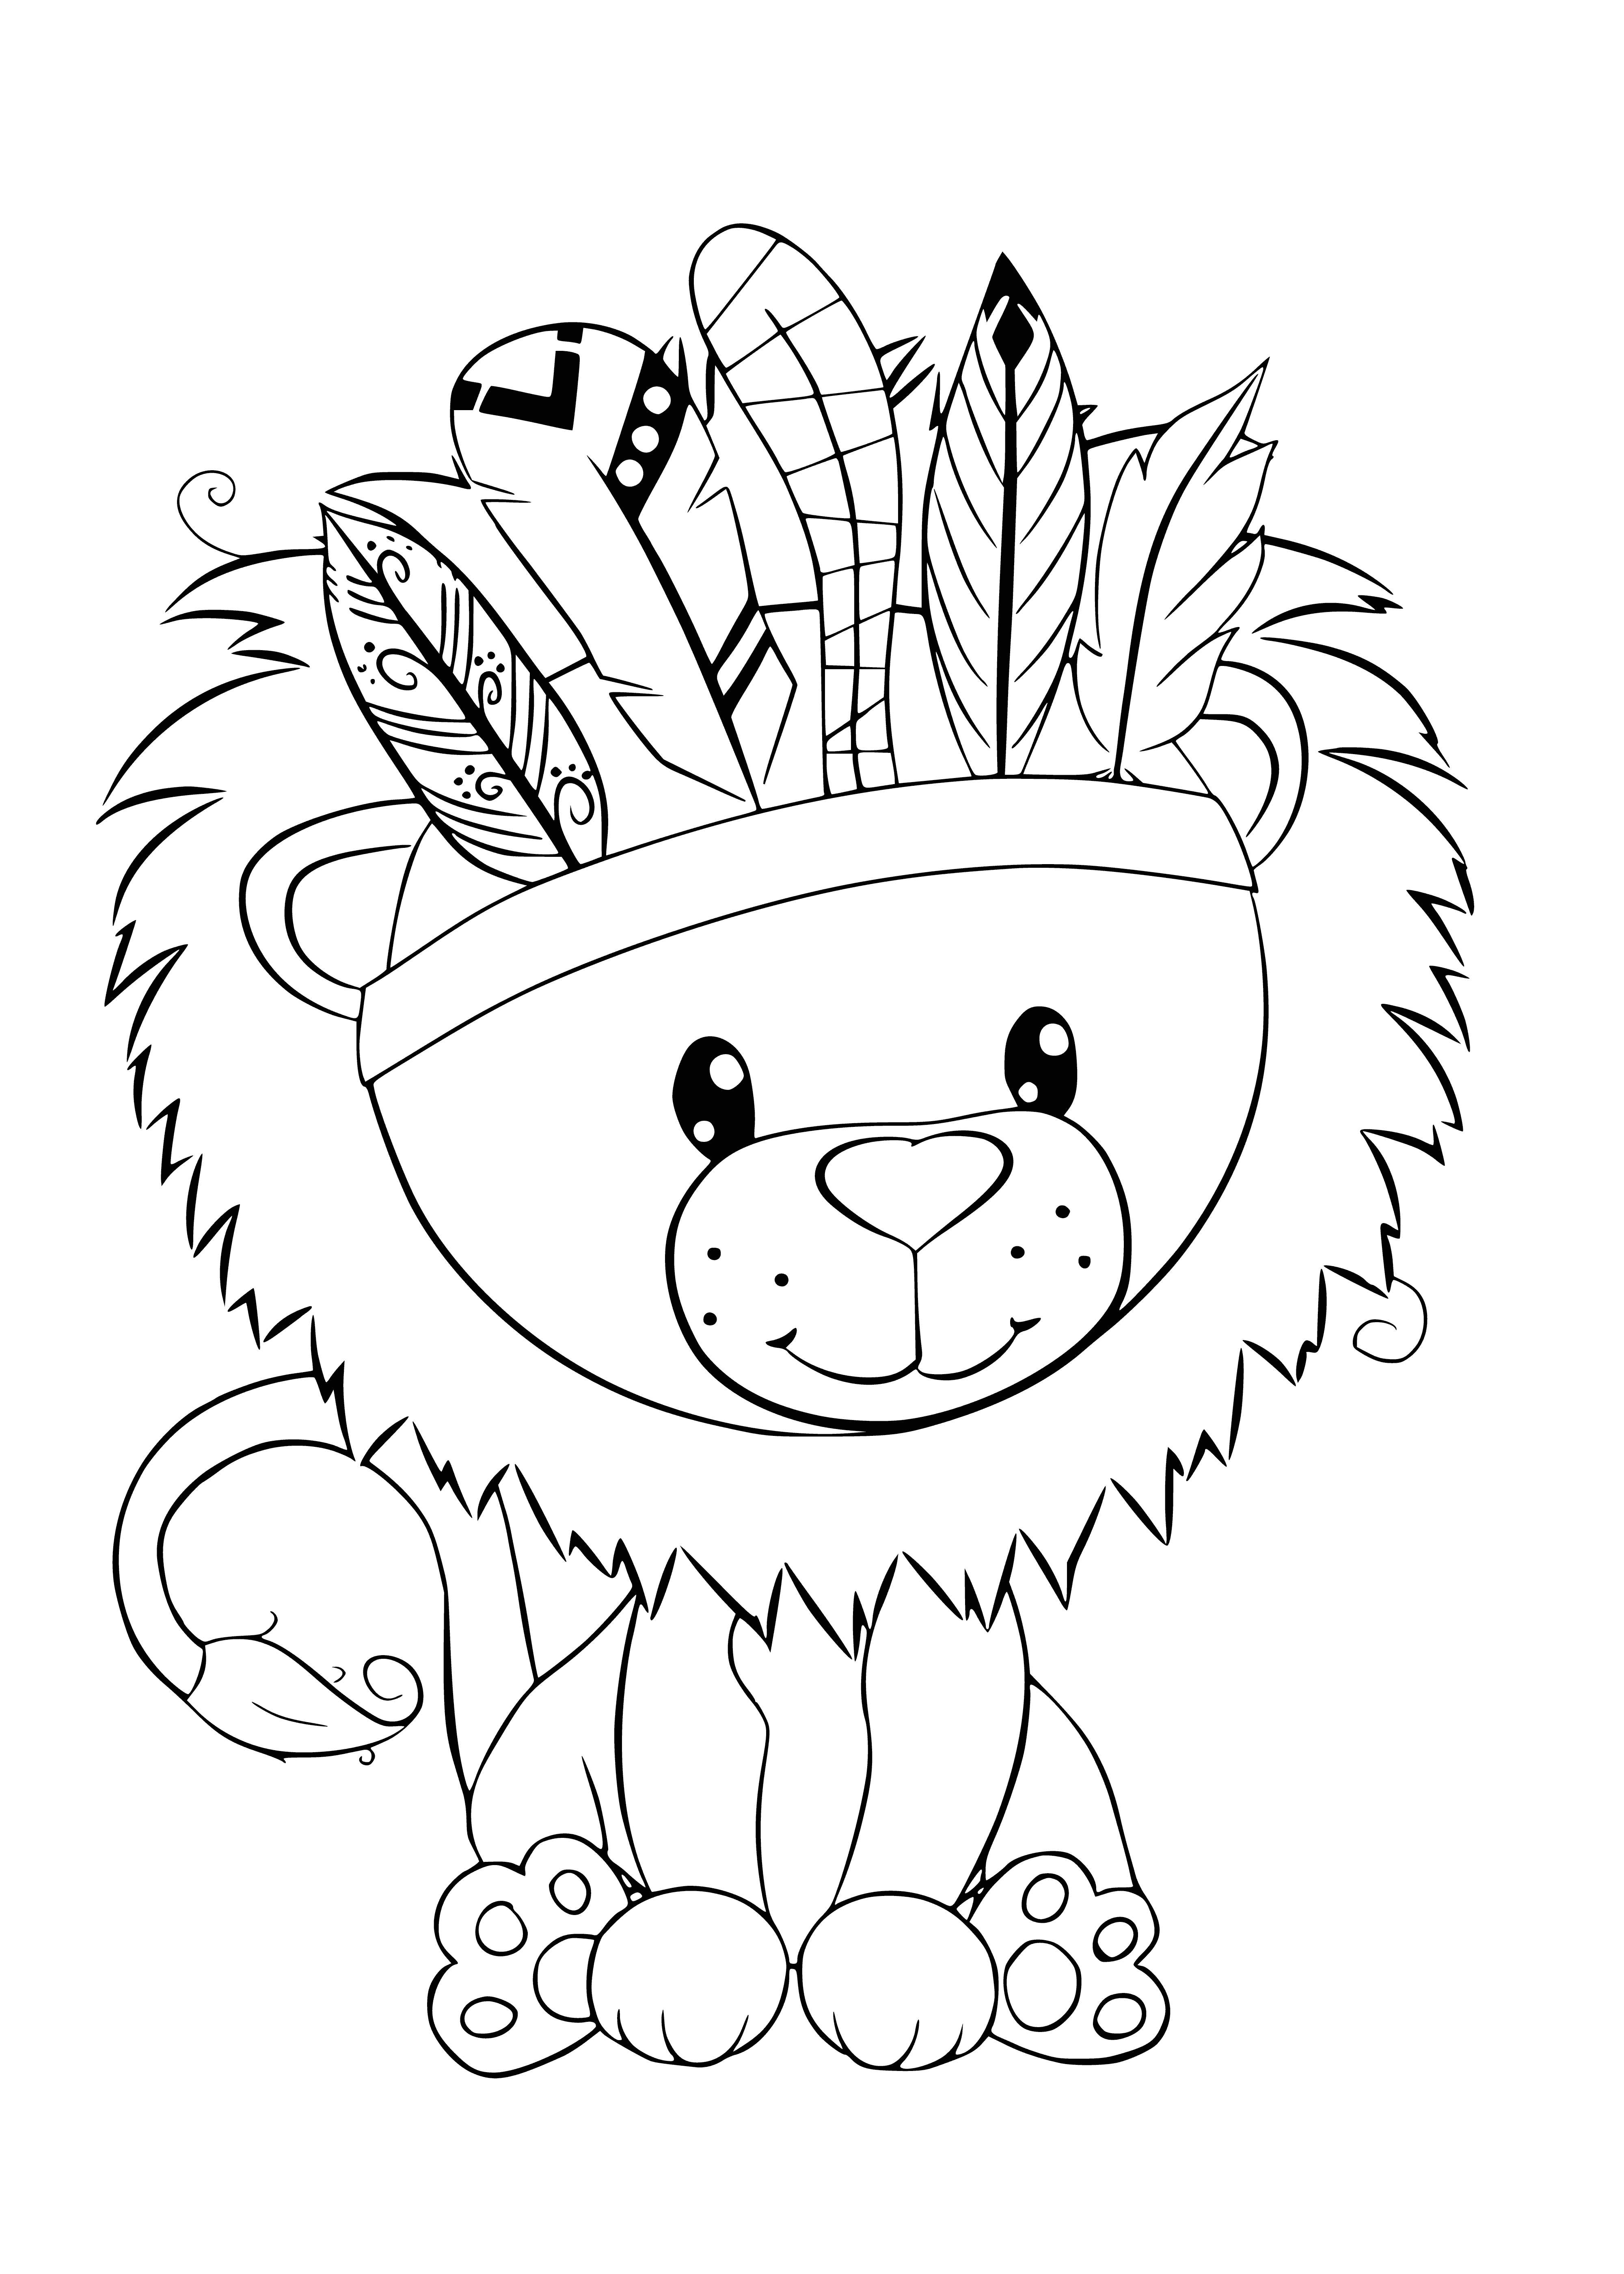 Lion cub coloring page